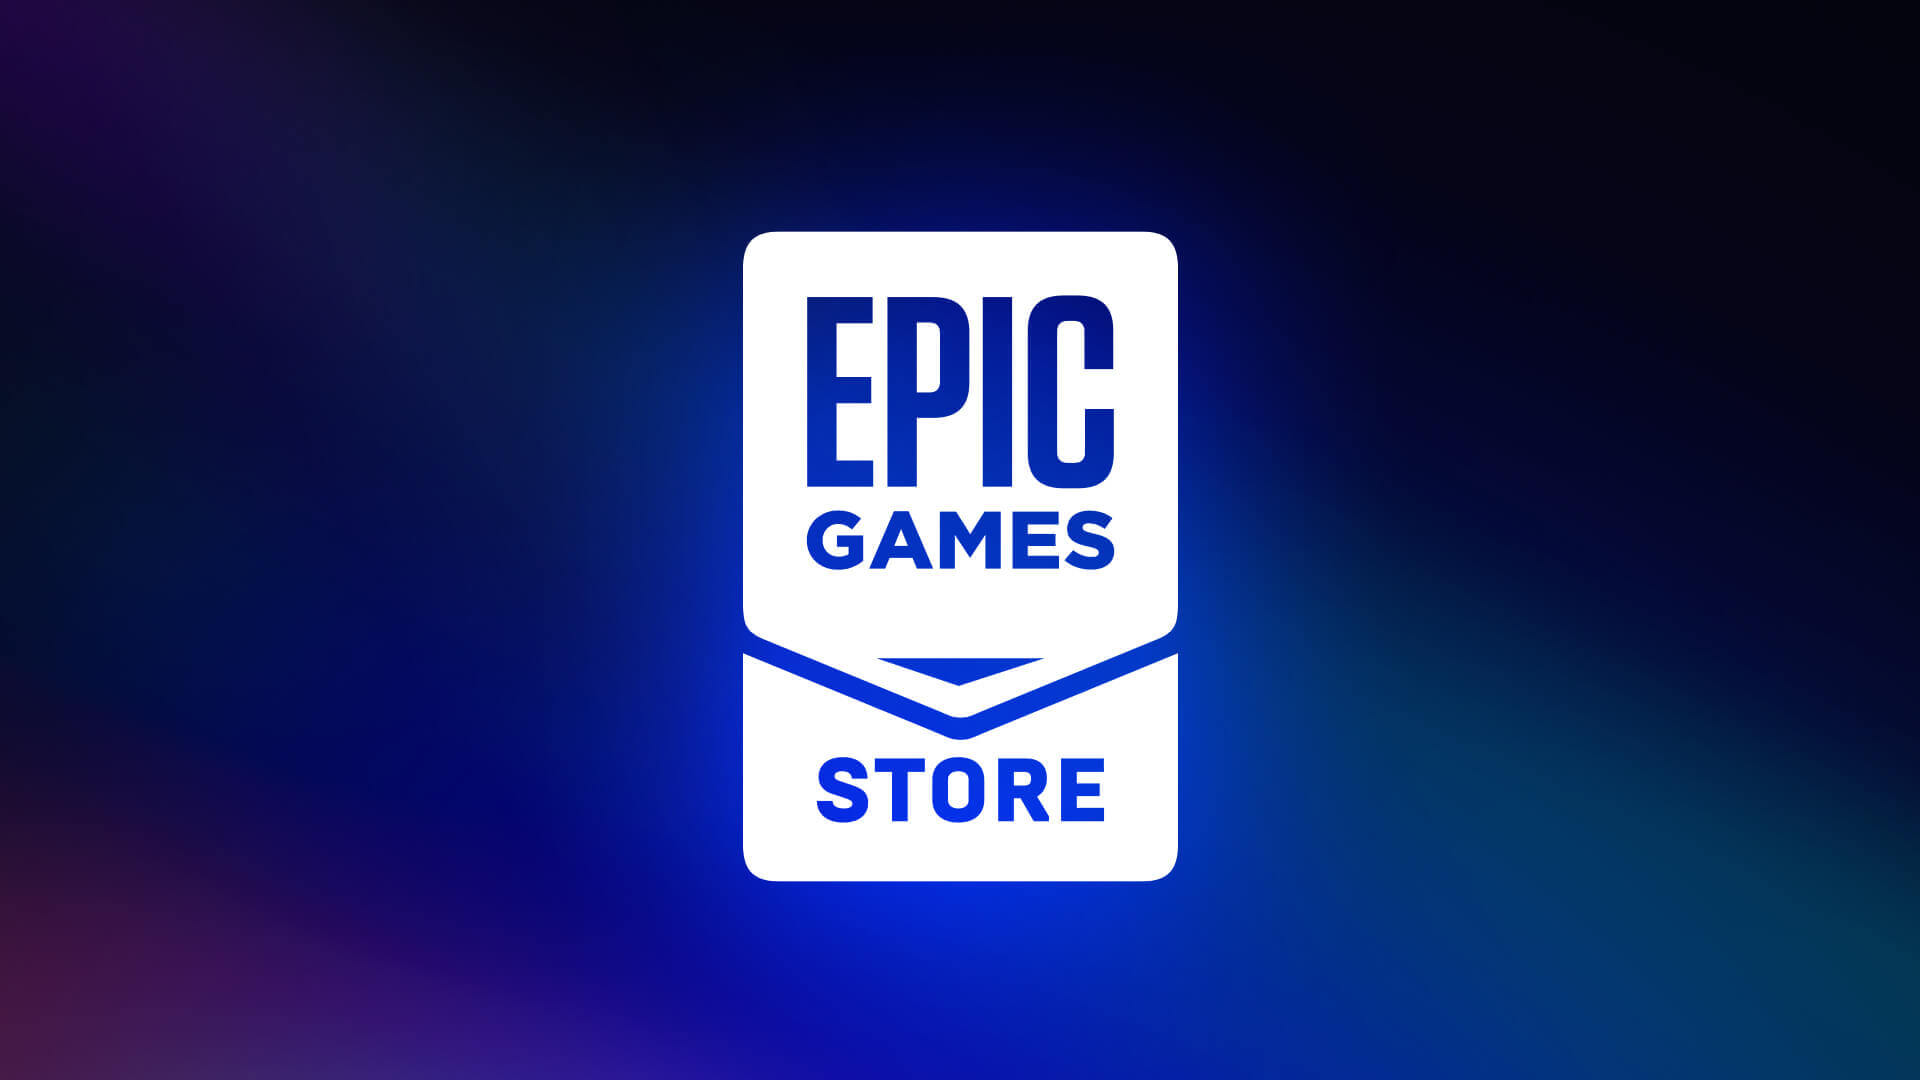 Epic Games, popüler oyunu ücretsiz hale getirdi! Nasıl alınır?